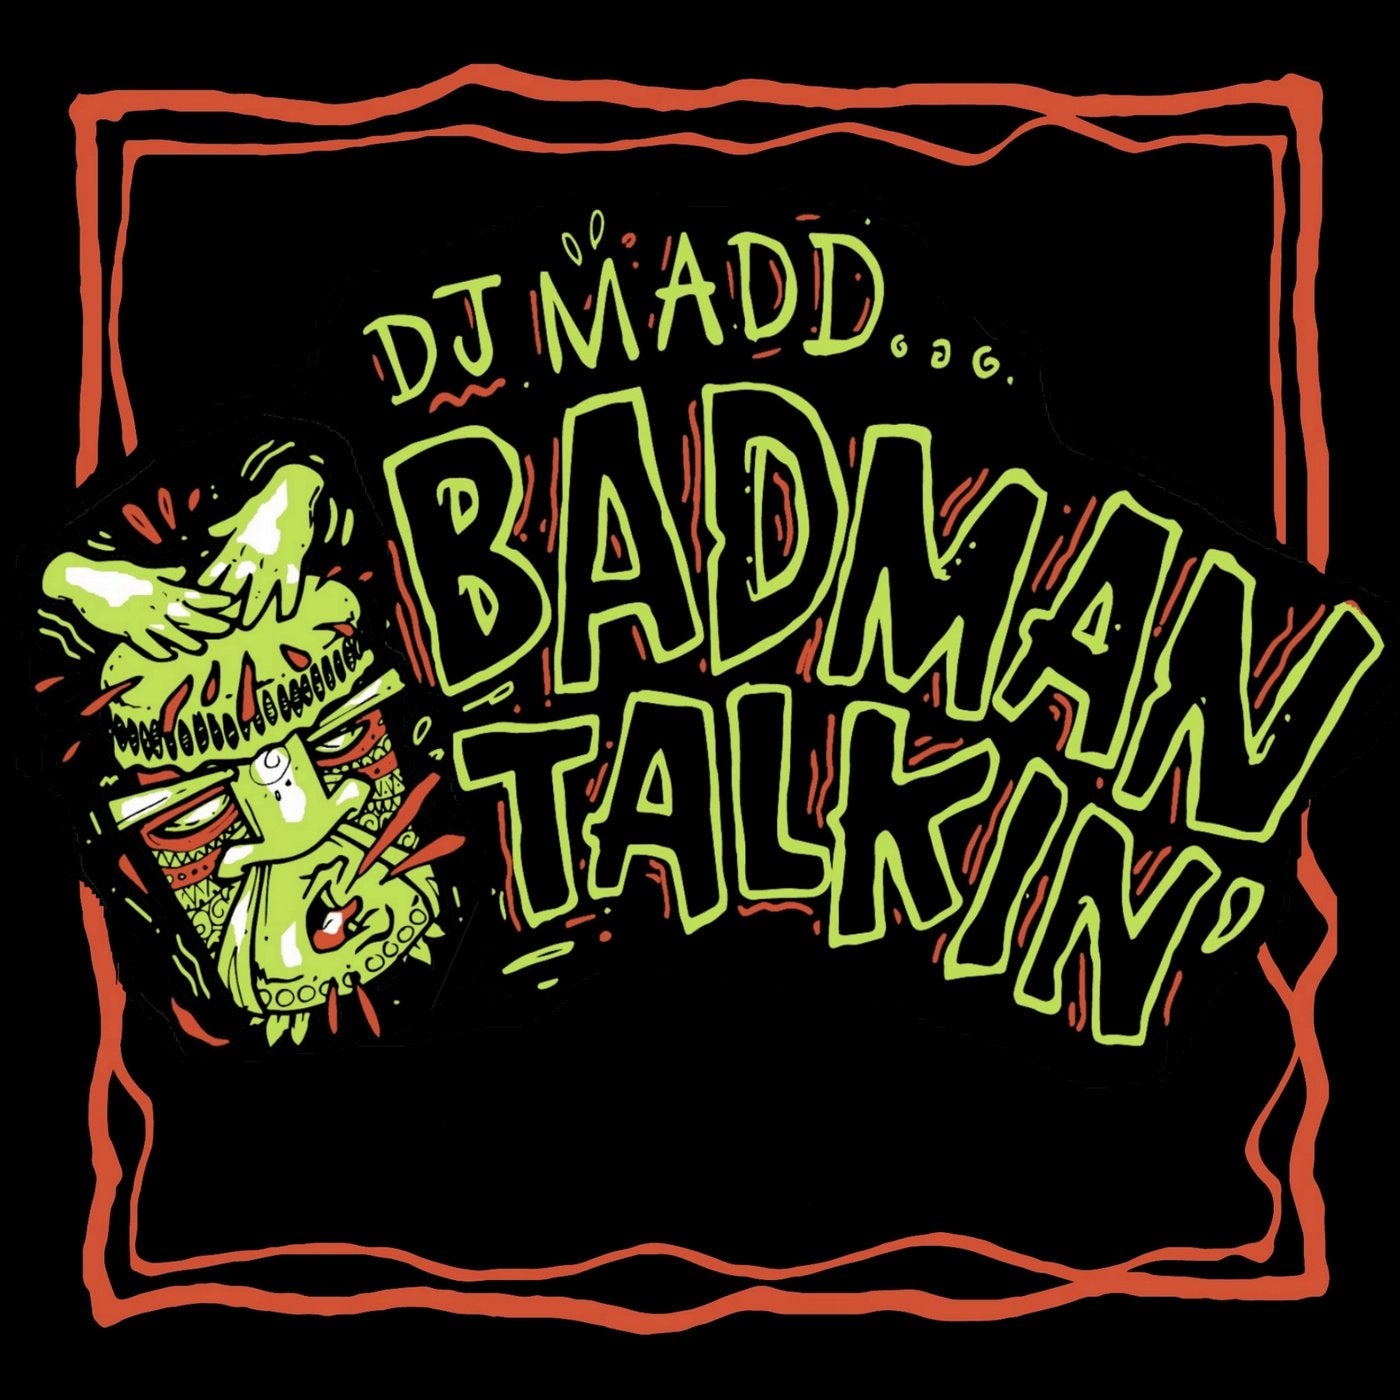 Badman Talkin'